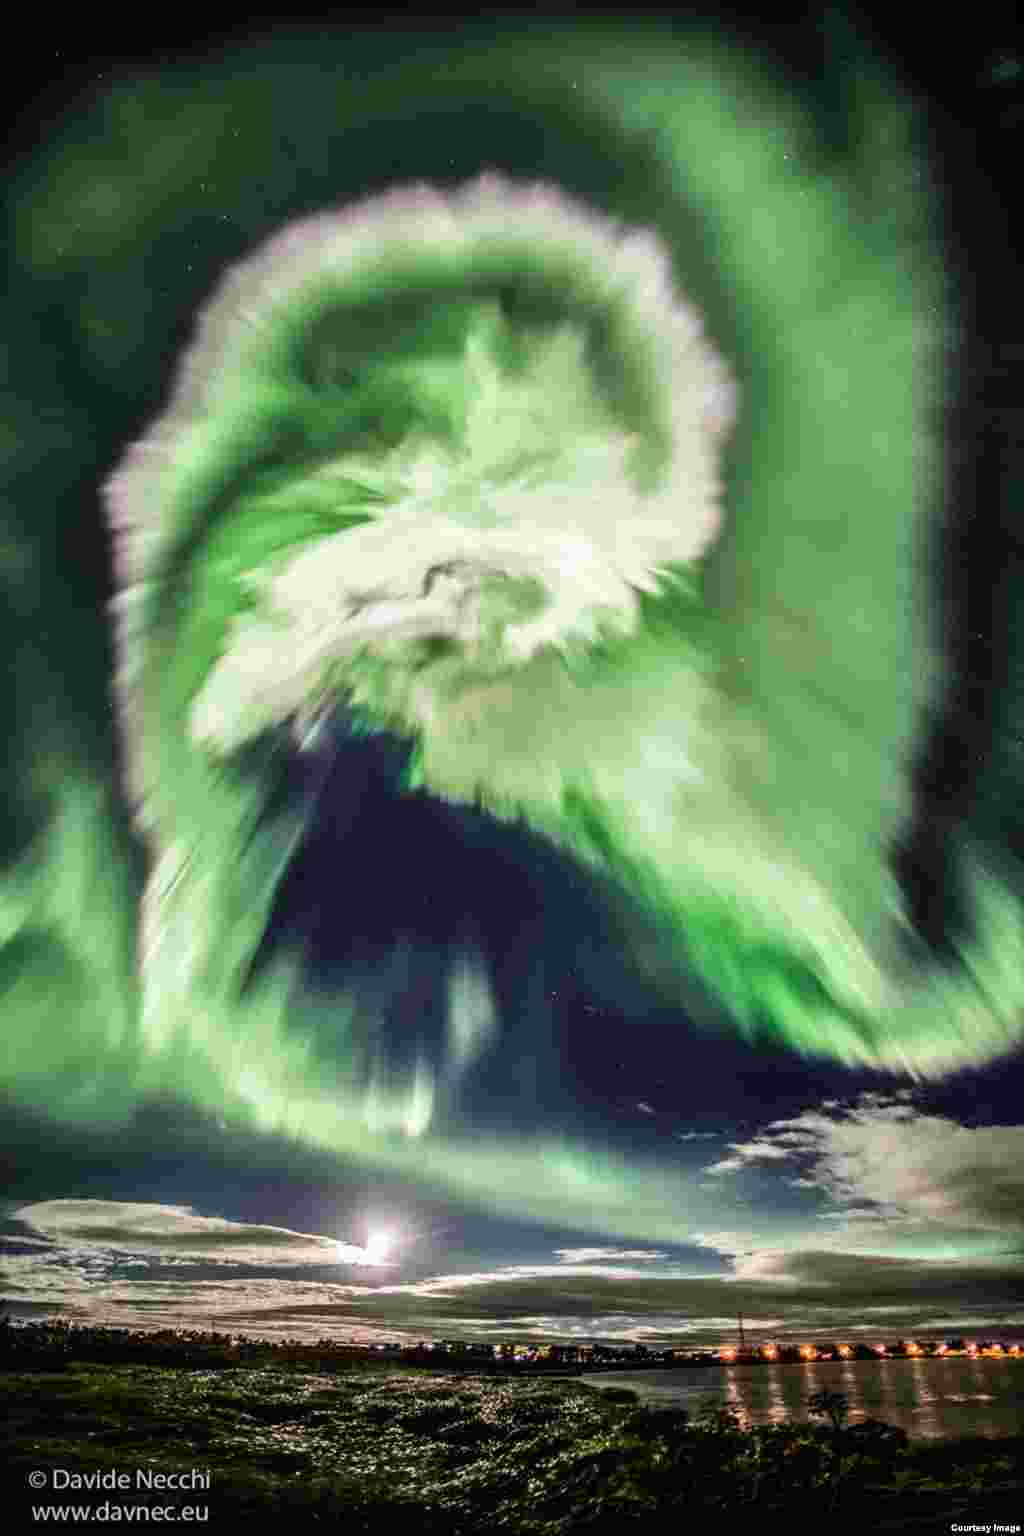 Magična polarna svetlost: Snimak aurore borealis u realnom vremenu na nebu iznad Islanda. Snimak fotografa-amatera, Dejvida Nekia